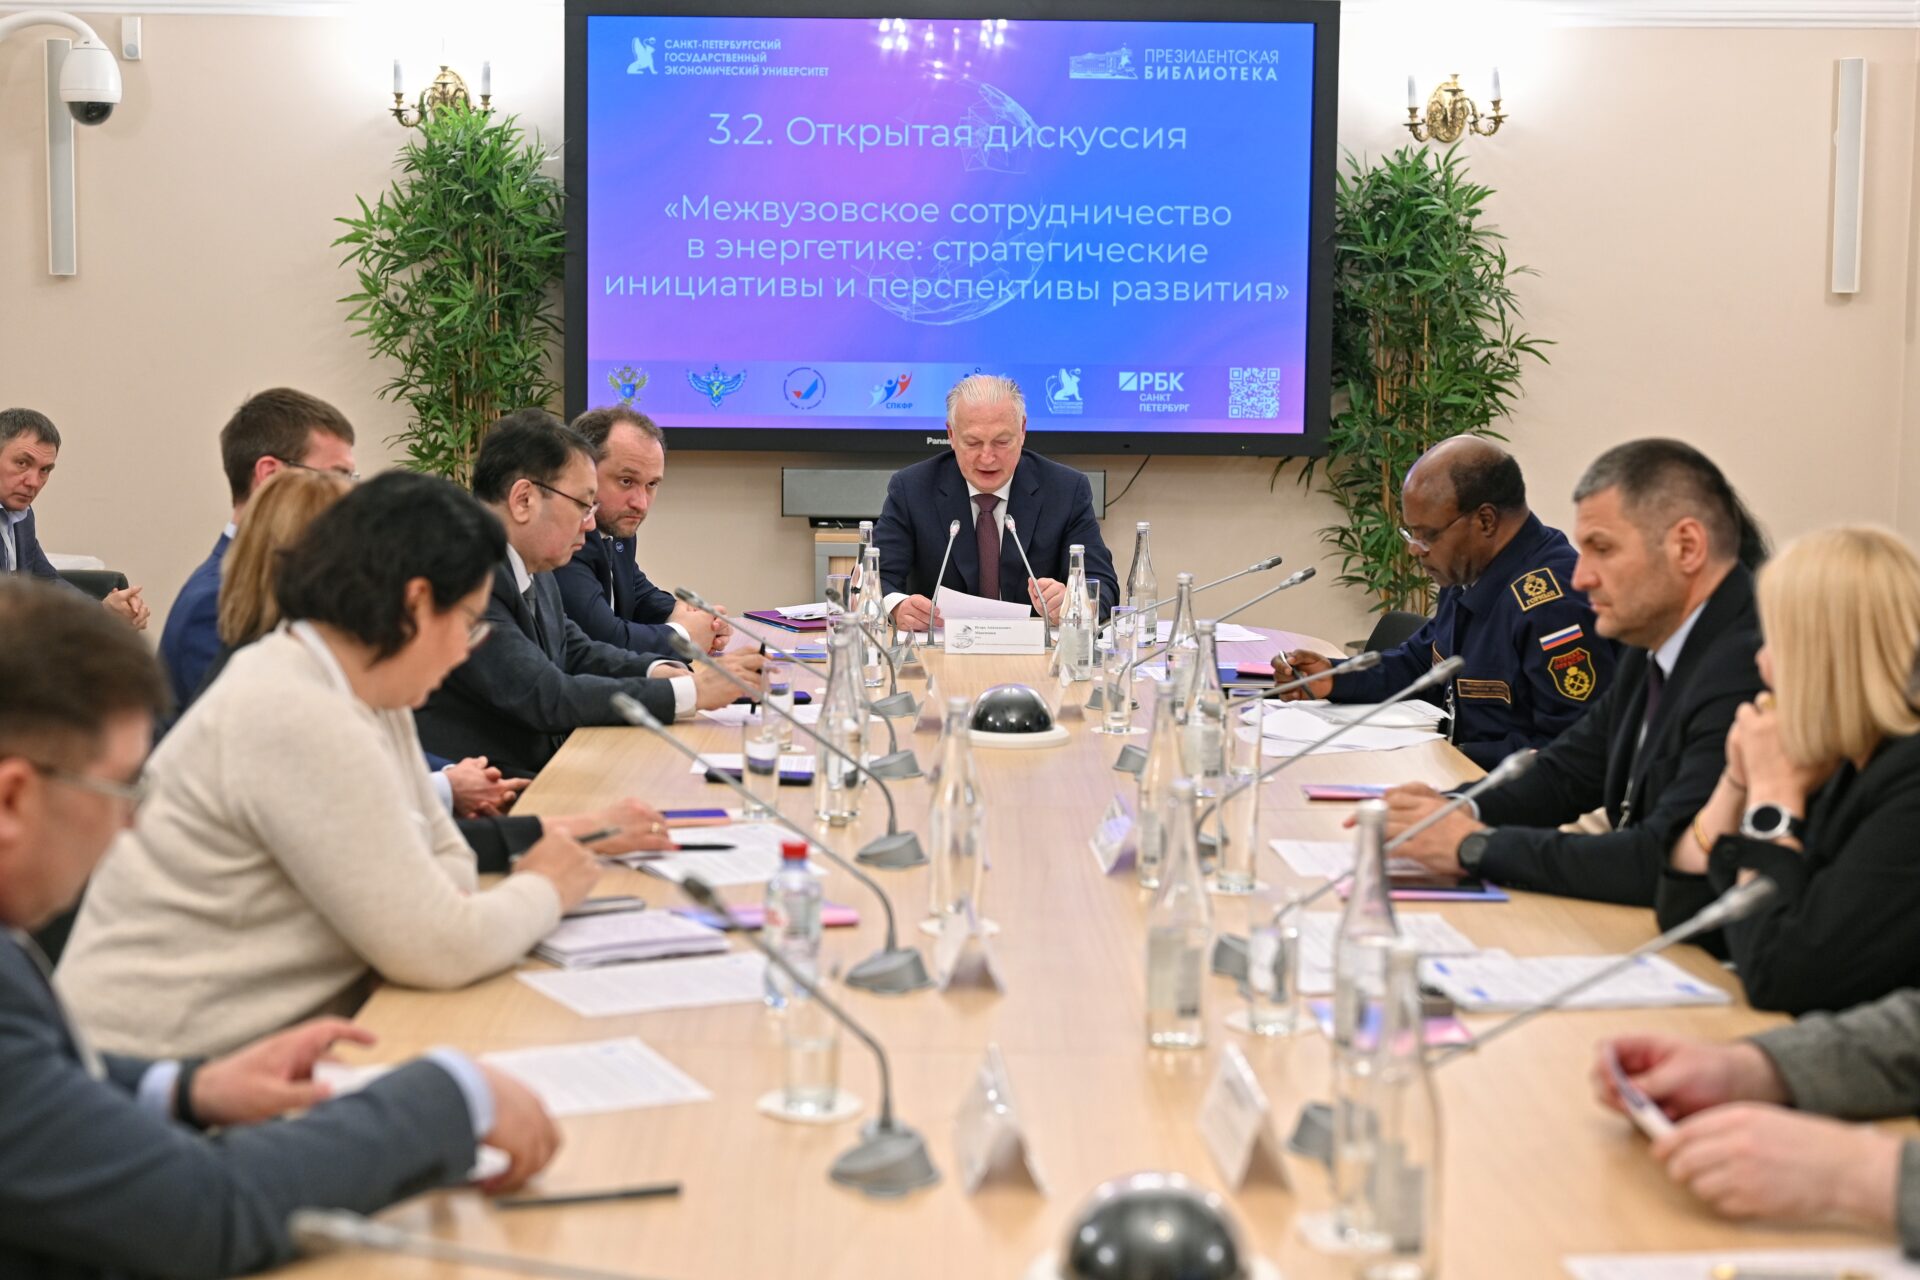 Межвузовское сотрудничество в энергетике обсудили на круглом столе